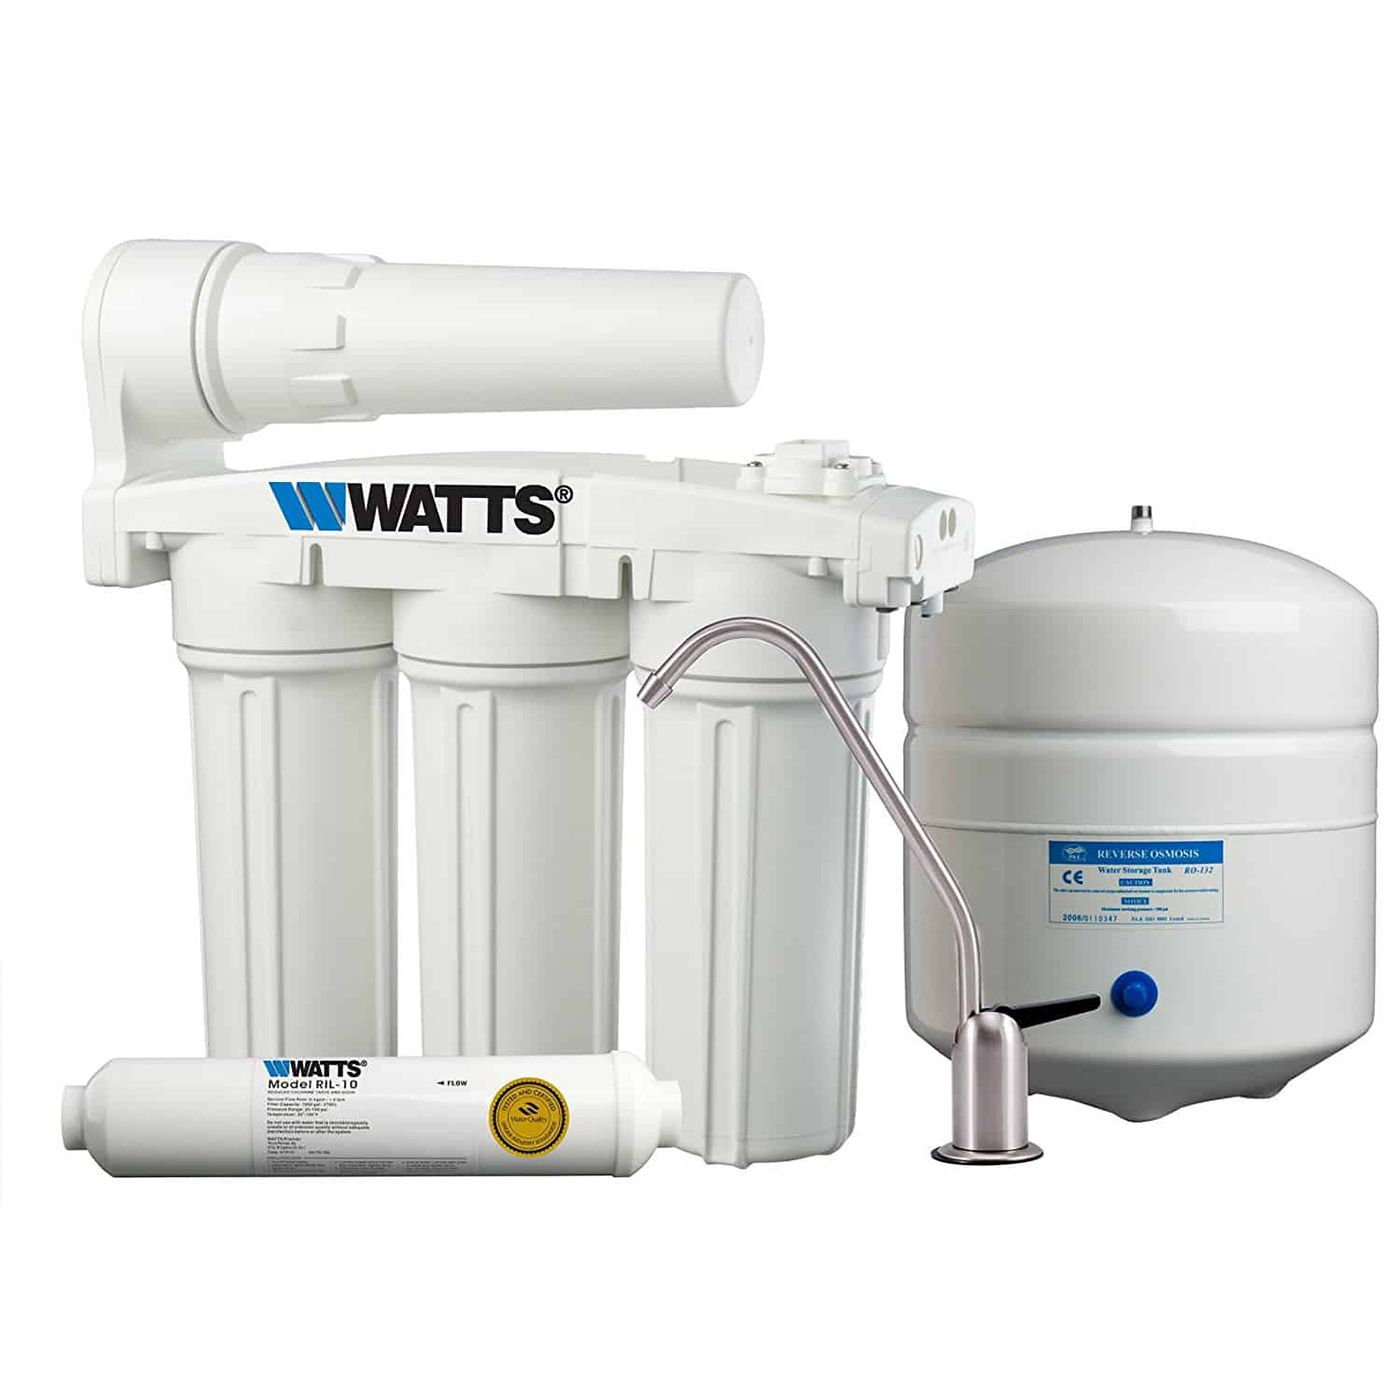 Watts 525 Pro Under Sink Unit Purchase 